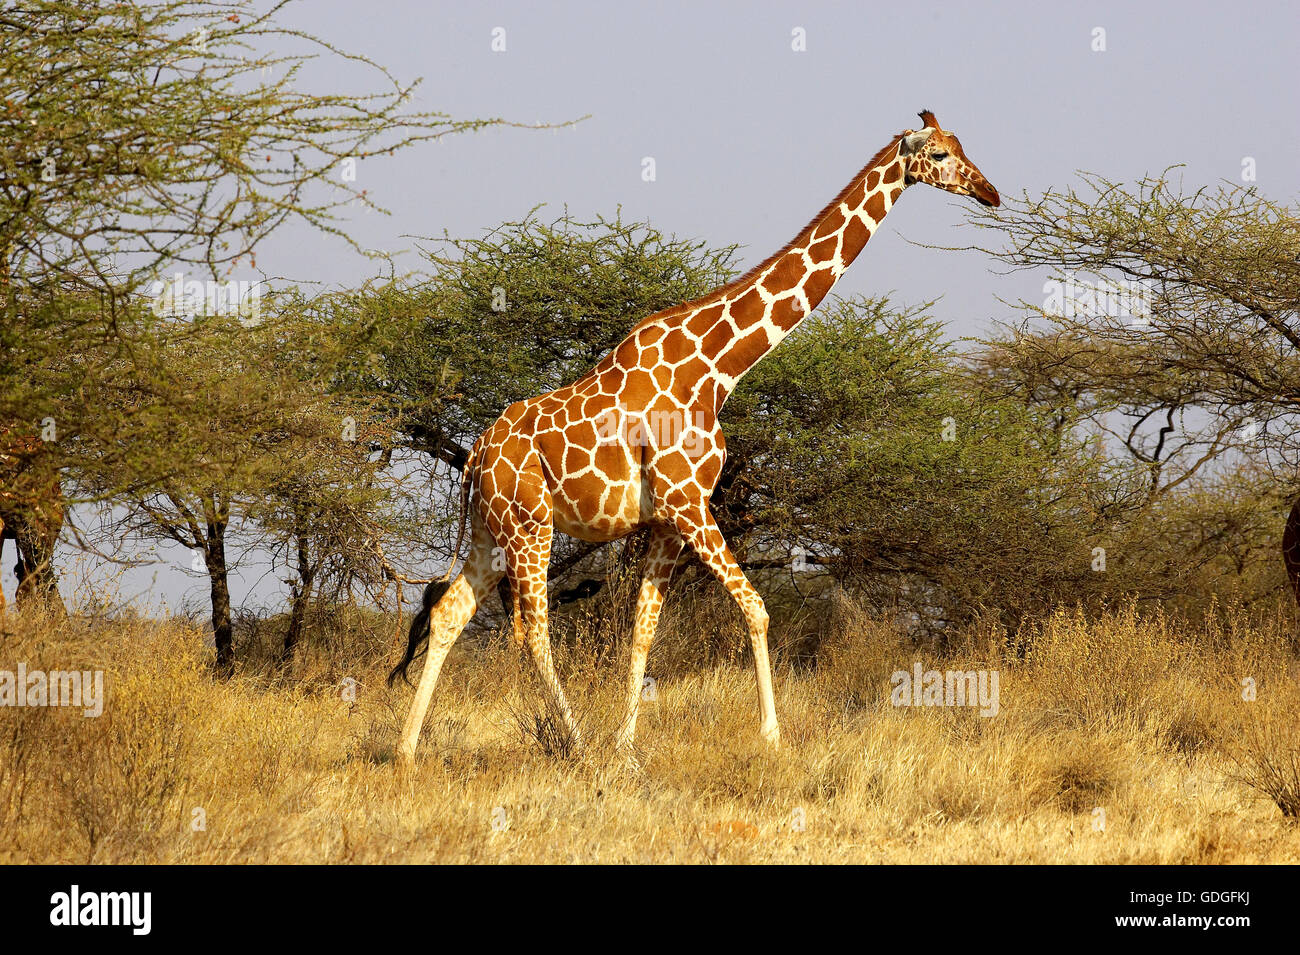 Jirafa reticulada, giraffa camelopardalis reticulata, adulto caminando por acacias, árboles, Parque de Samburu en Kenia Foto de stock